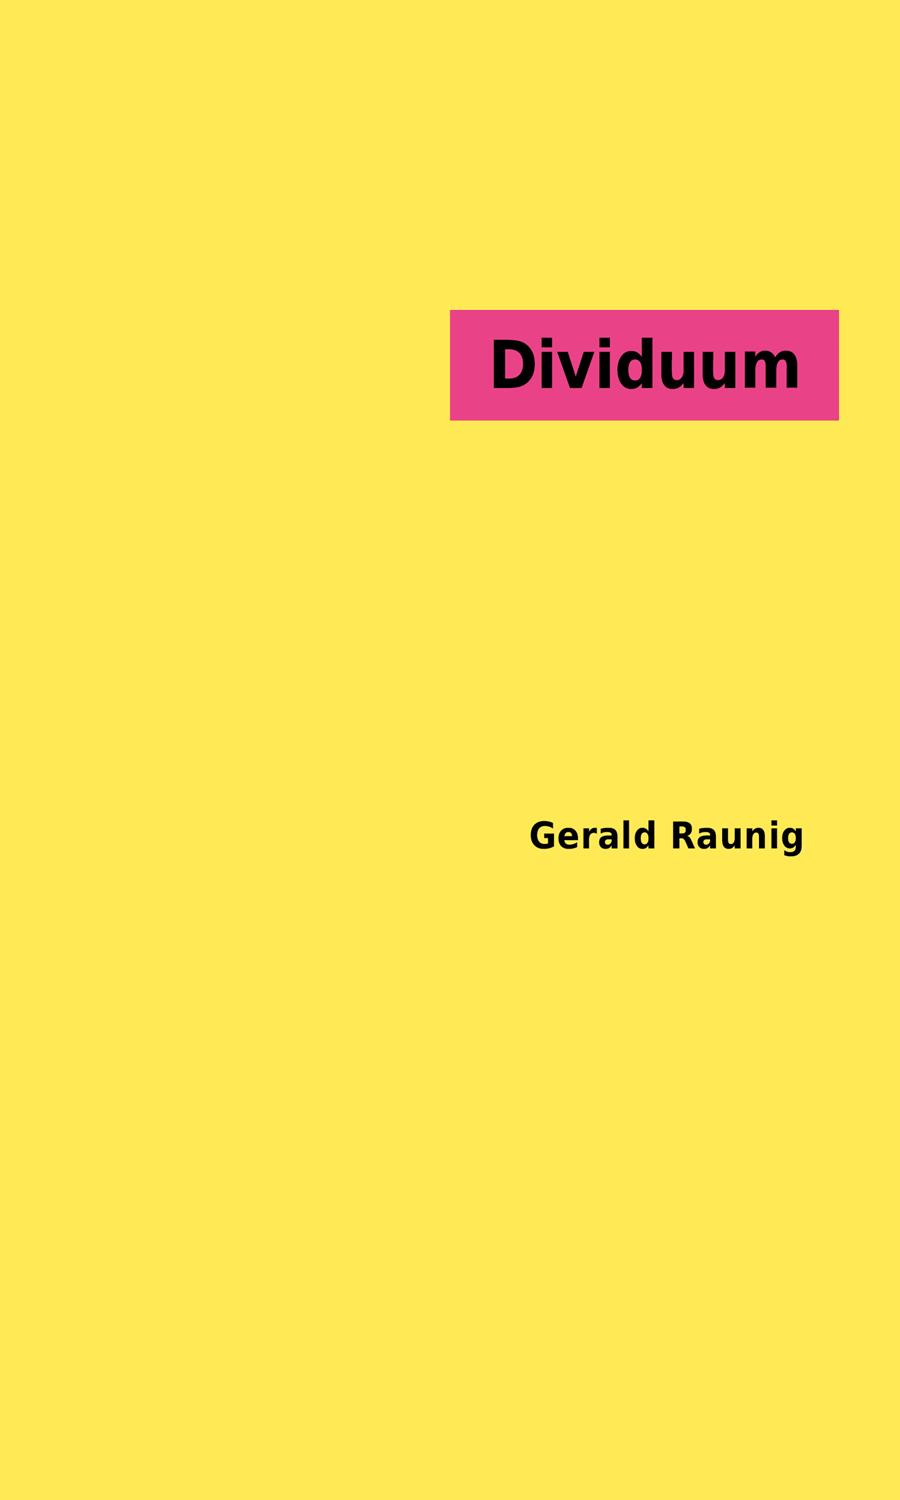 Dividuum | Raunig, Gerald | Cooperativa autogestionària